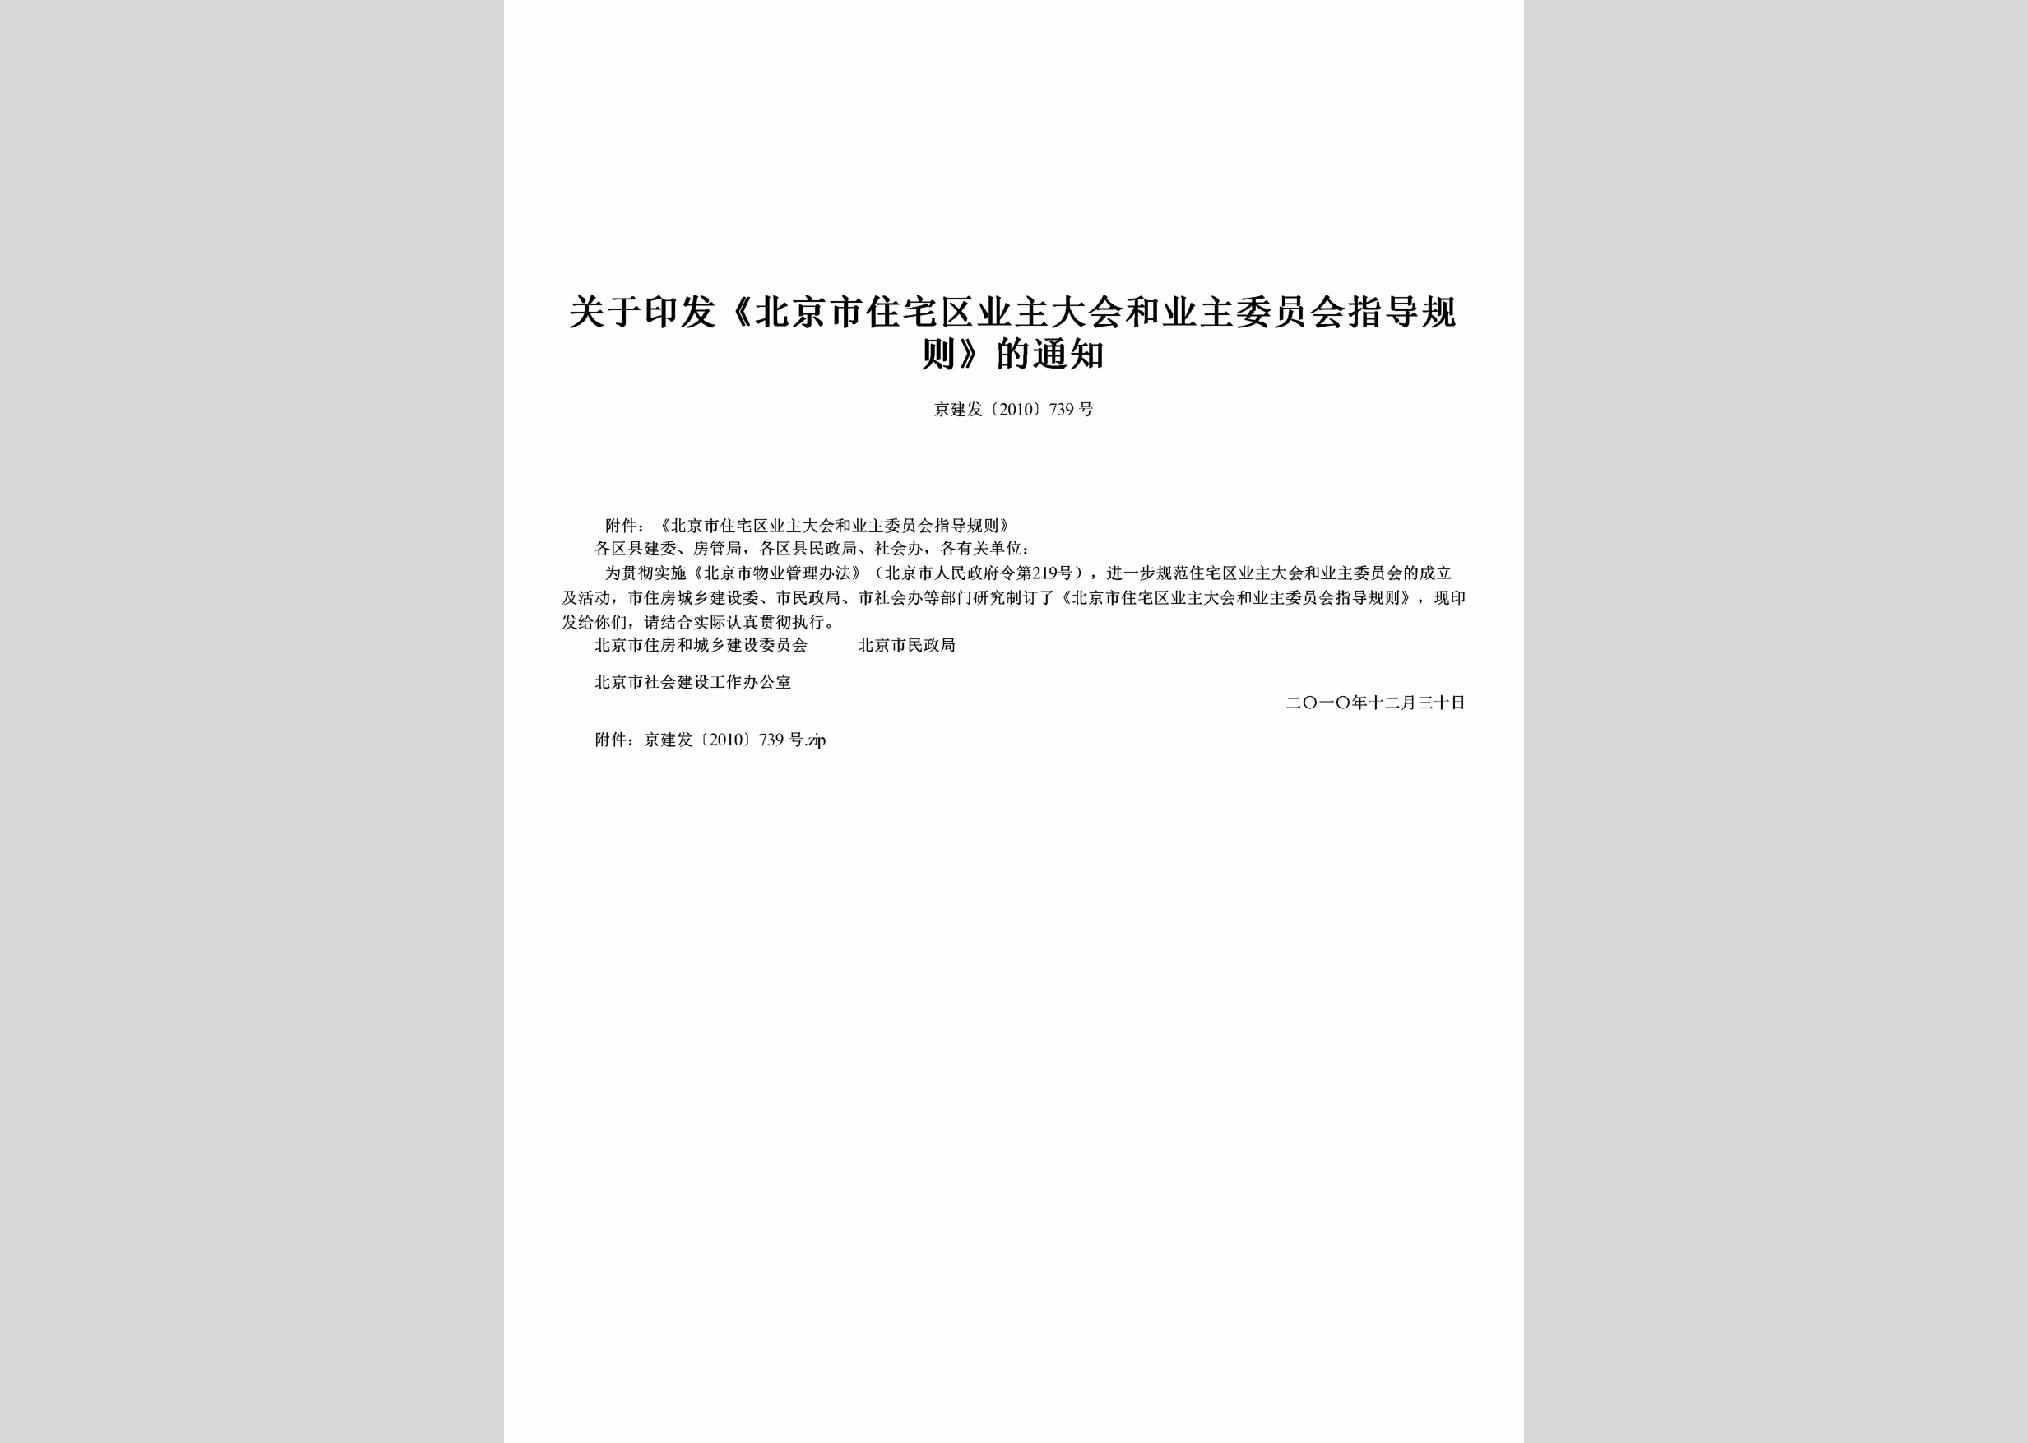 京建发[2010]739号：关于印发《北京市住宅区业主大会和业主委员会指导规则》的通知